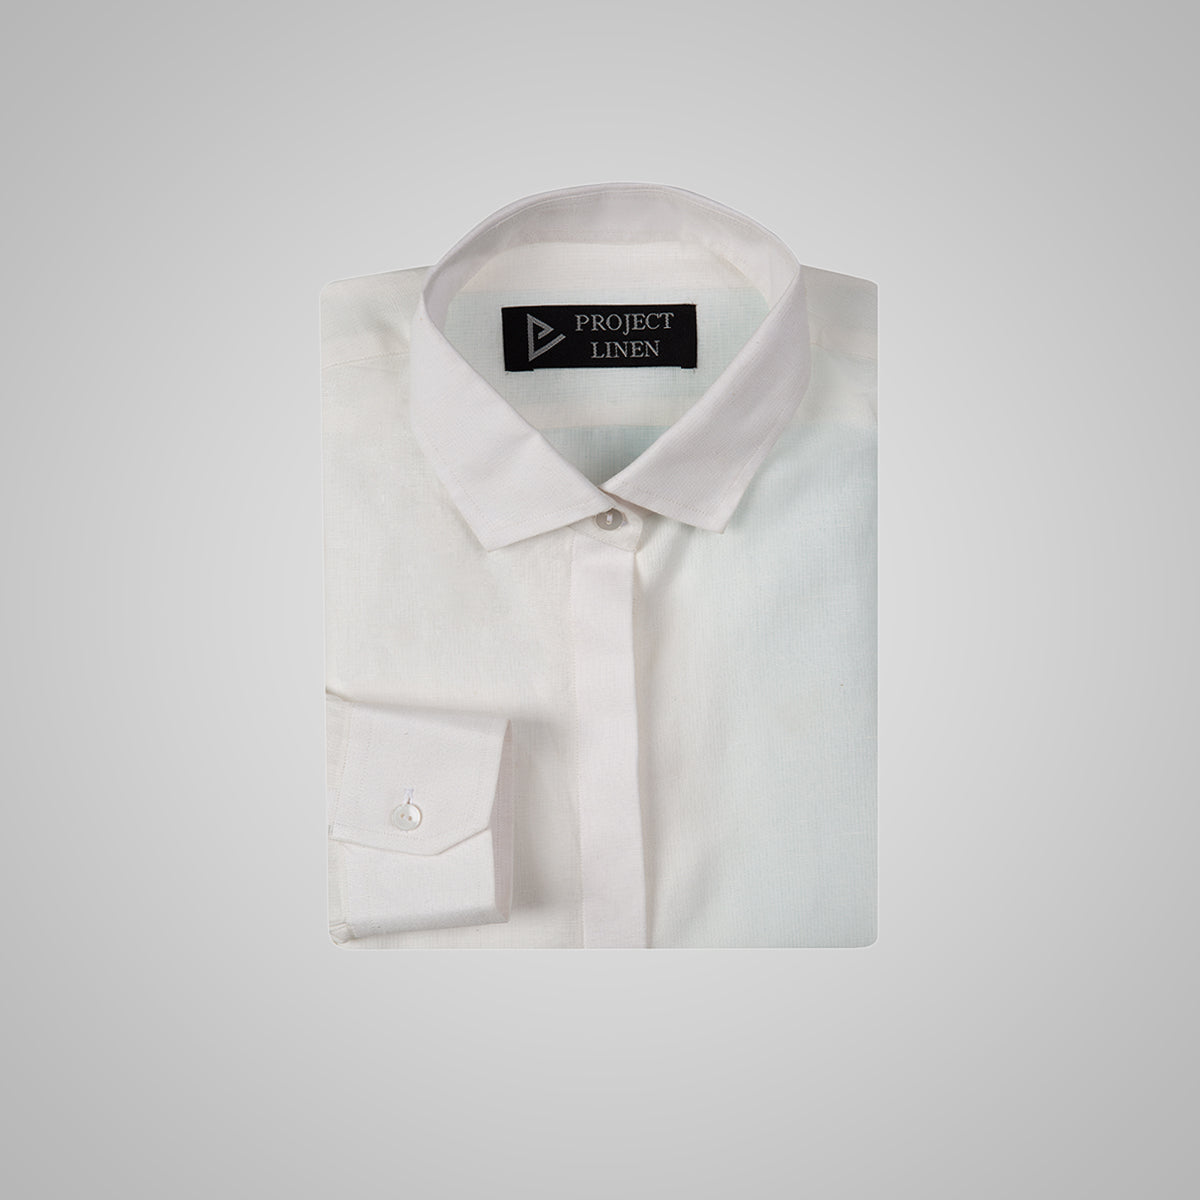 Plain White Linen Shirt - Her's